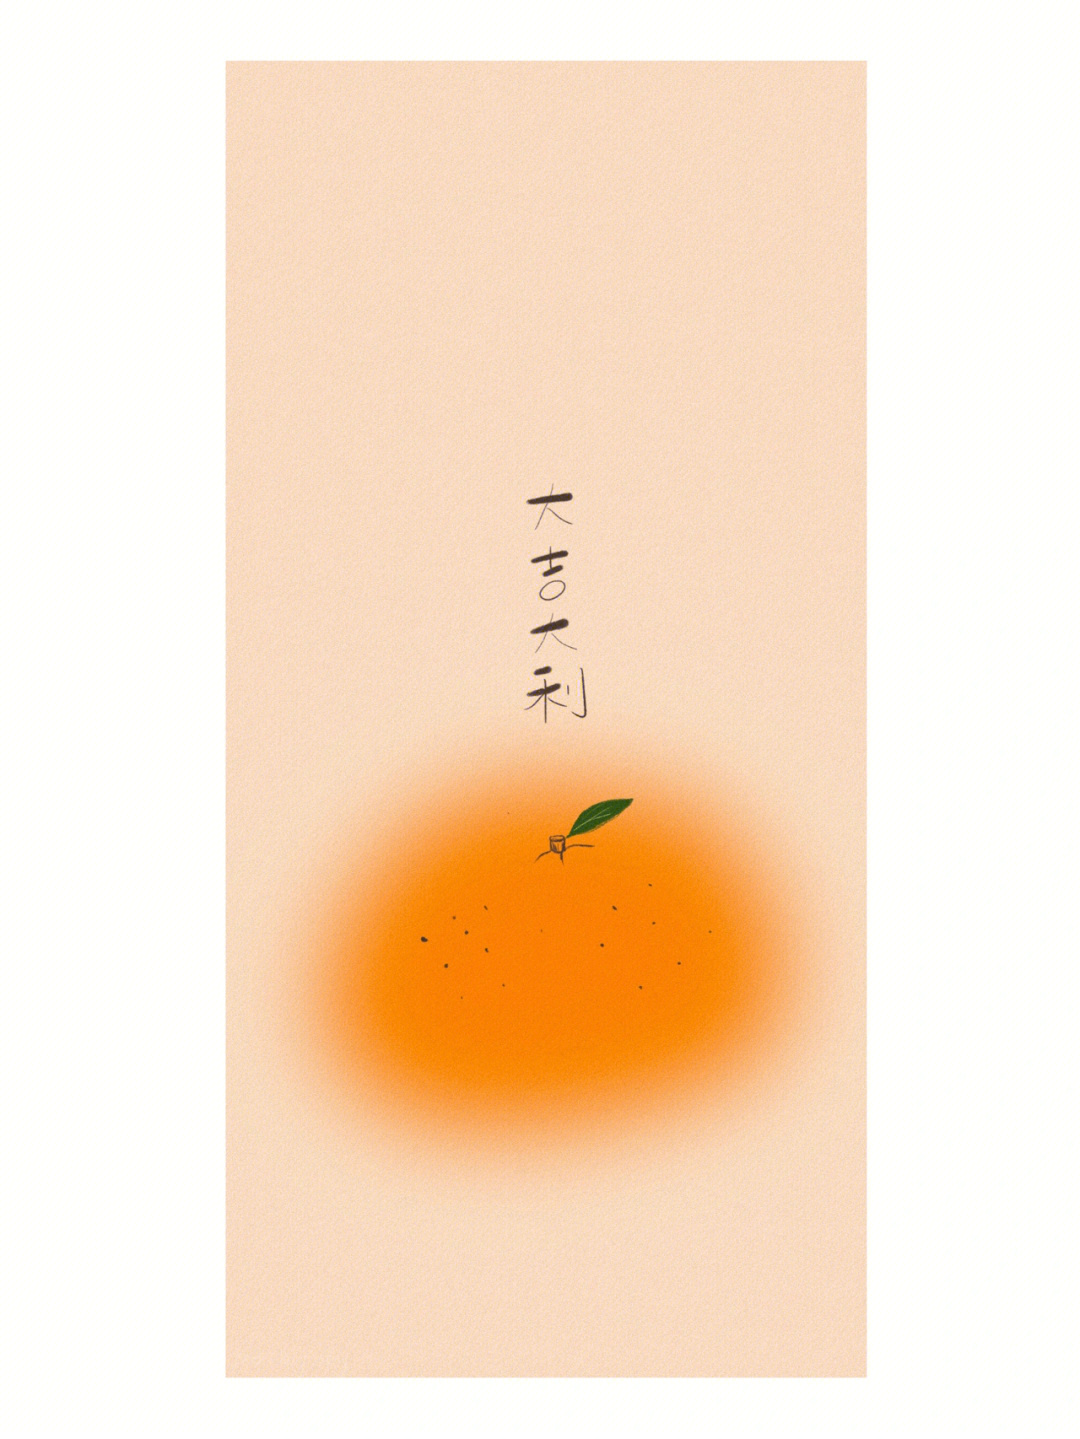 大橘大利背景图图片